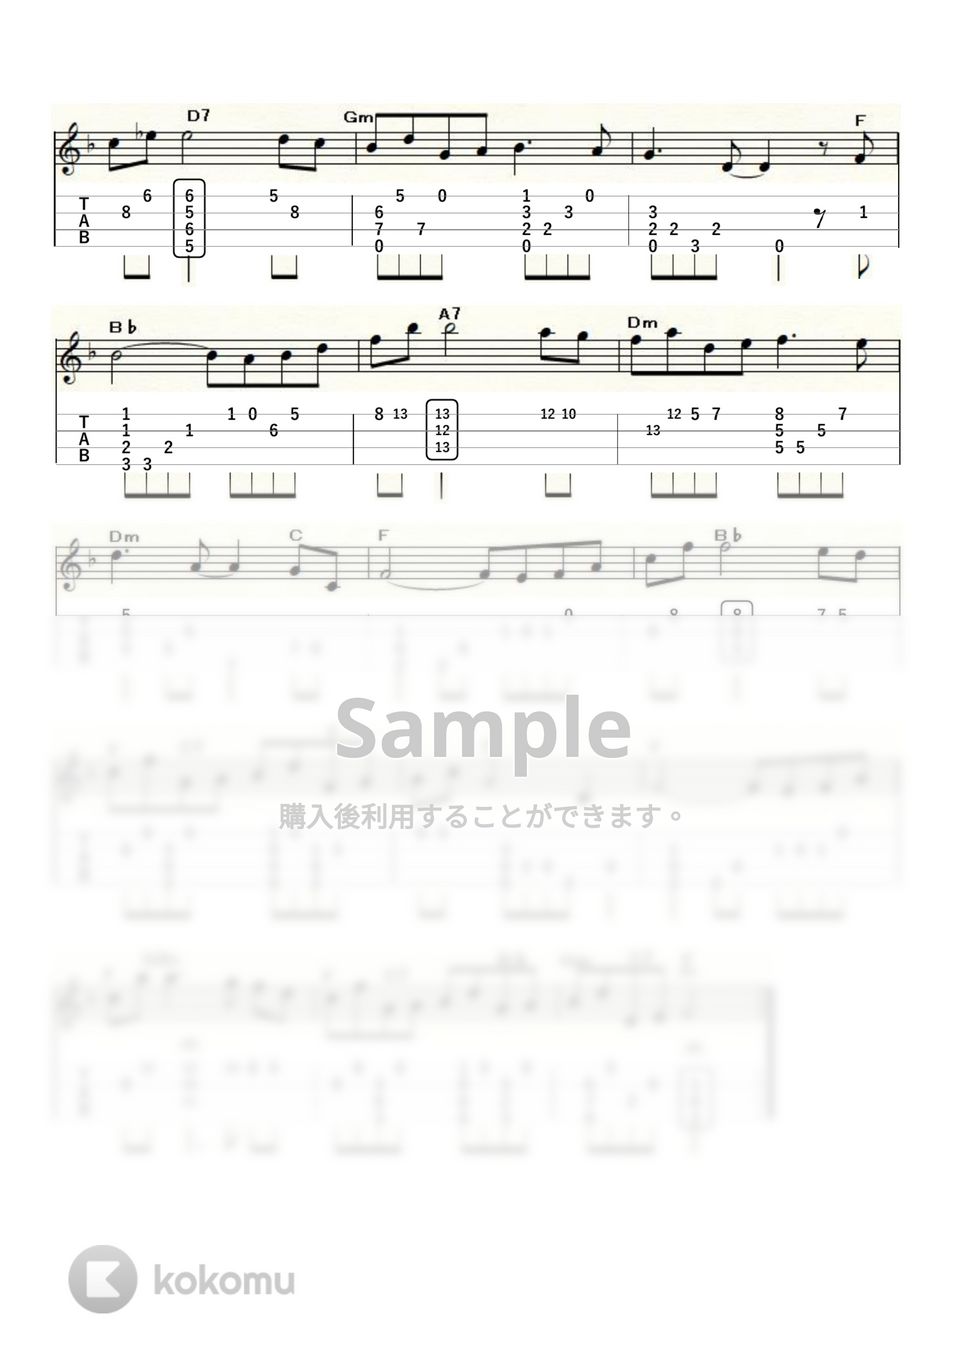 シューマン - トロイメライ (ｳｸﾚﾚｿﾛ / Low-G / 中級) by ukulelepapa